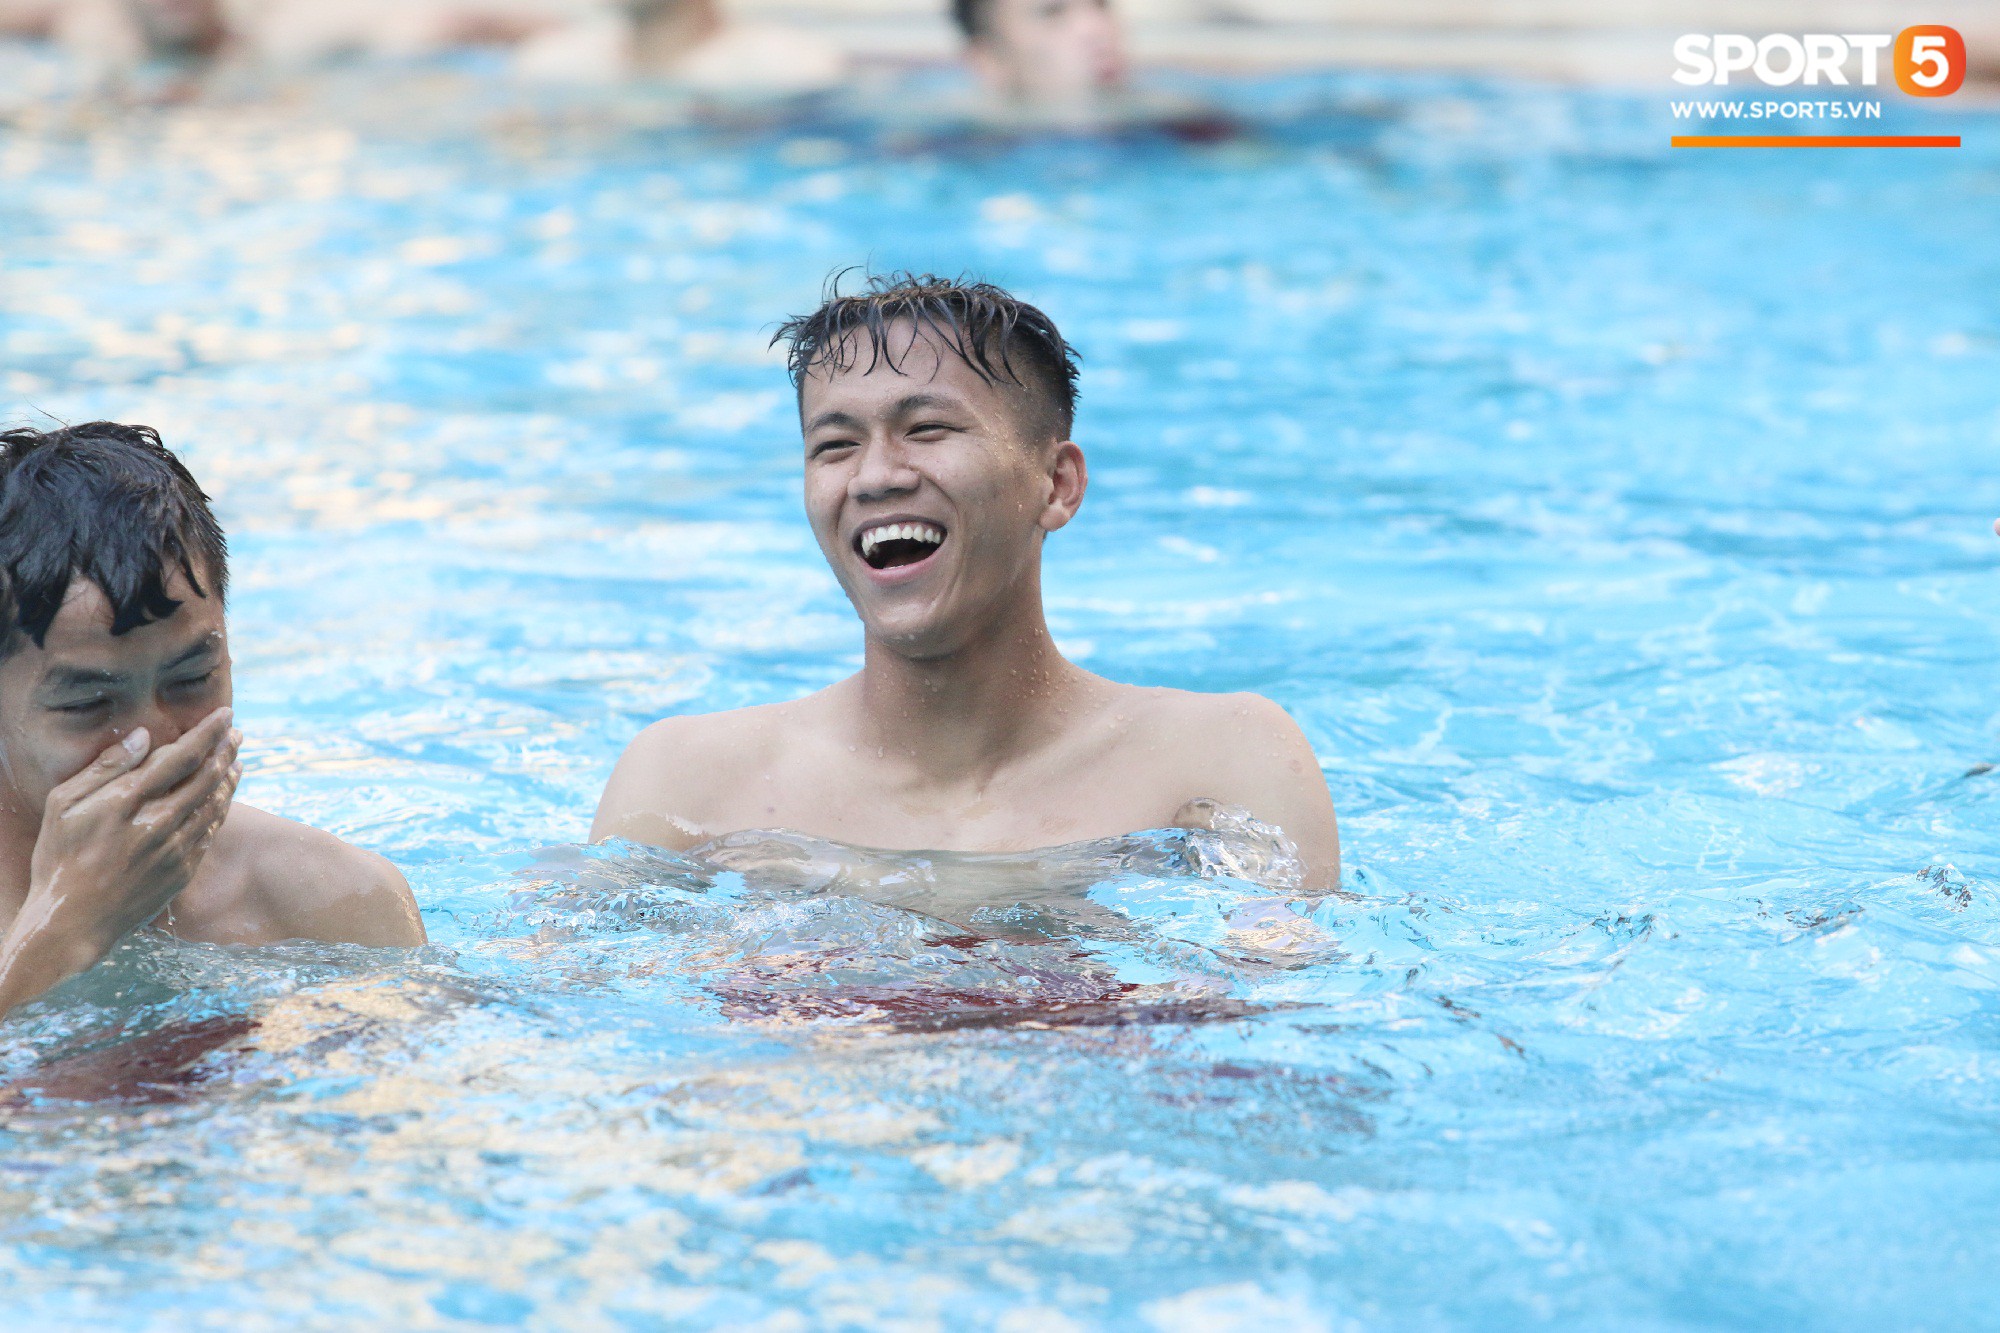 Chẳng kém các đàn anh, U22 Việt Nam cũng có rất nhiều cực phẩm khi vui đùa bên bể bơi-13